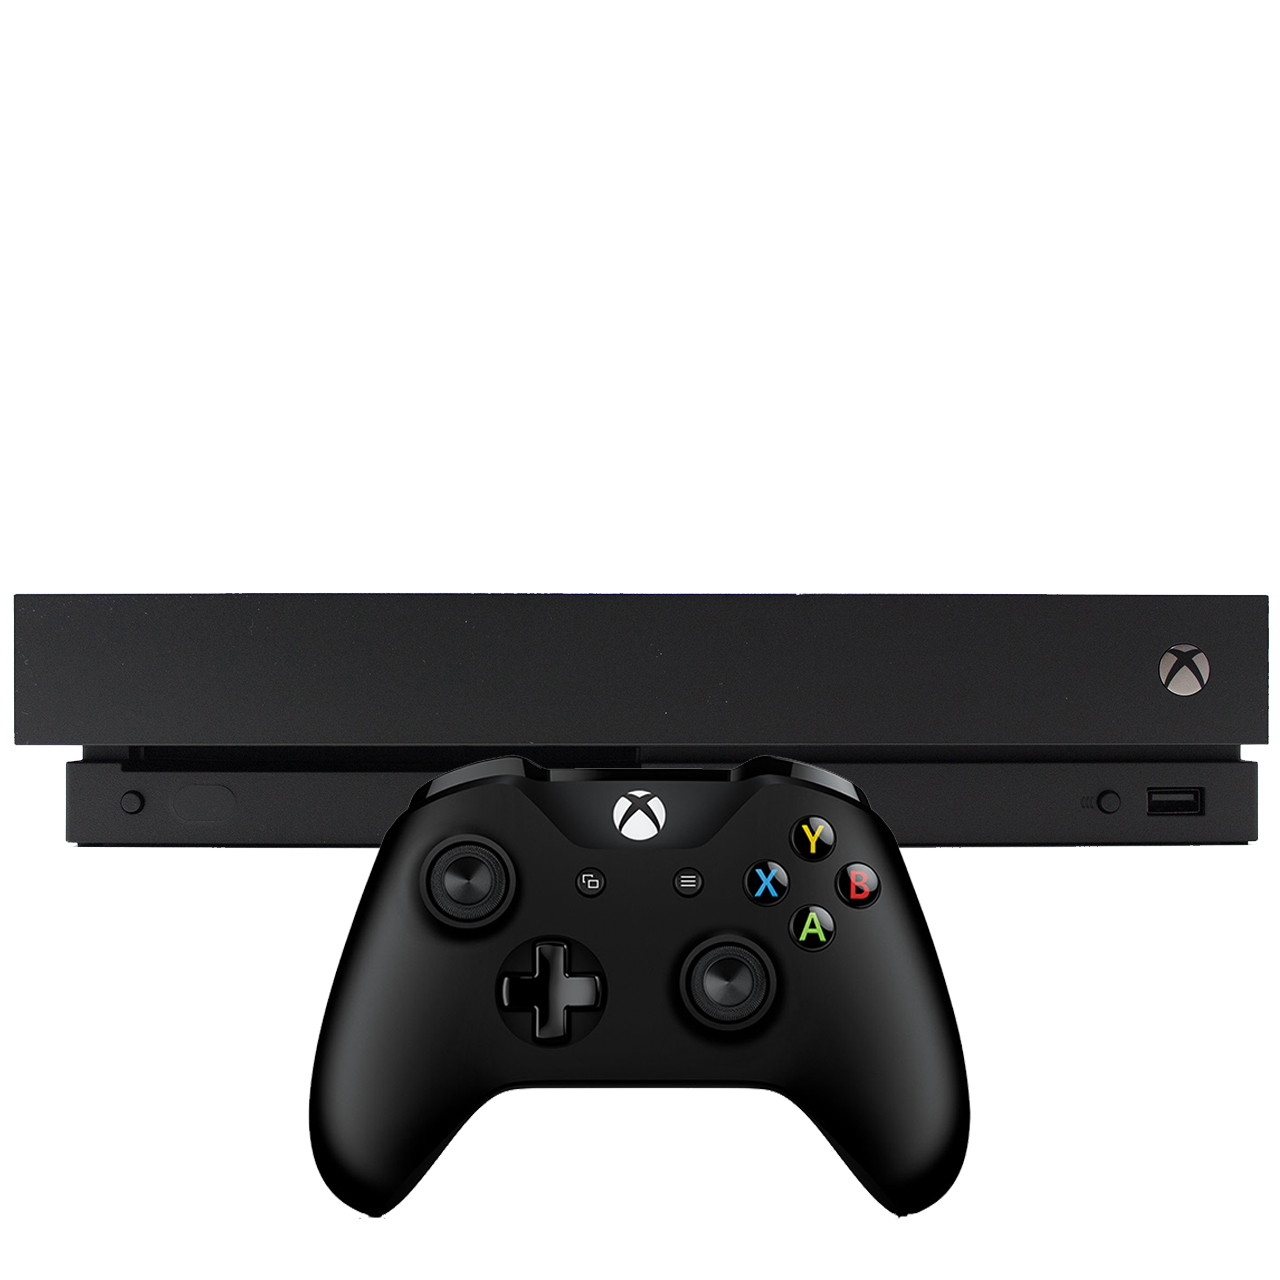 مجموعه کنسول بازی مایکروسافت مدل Xbox One X ظرفیت 1 ترابایت به همراه ۲۰ عدد بازی